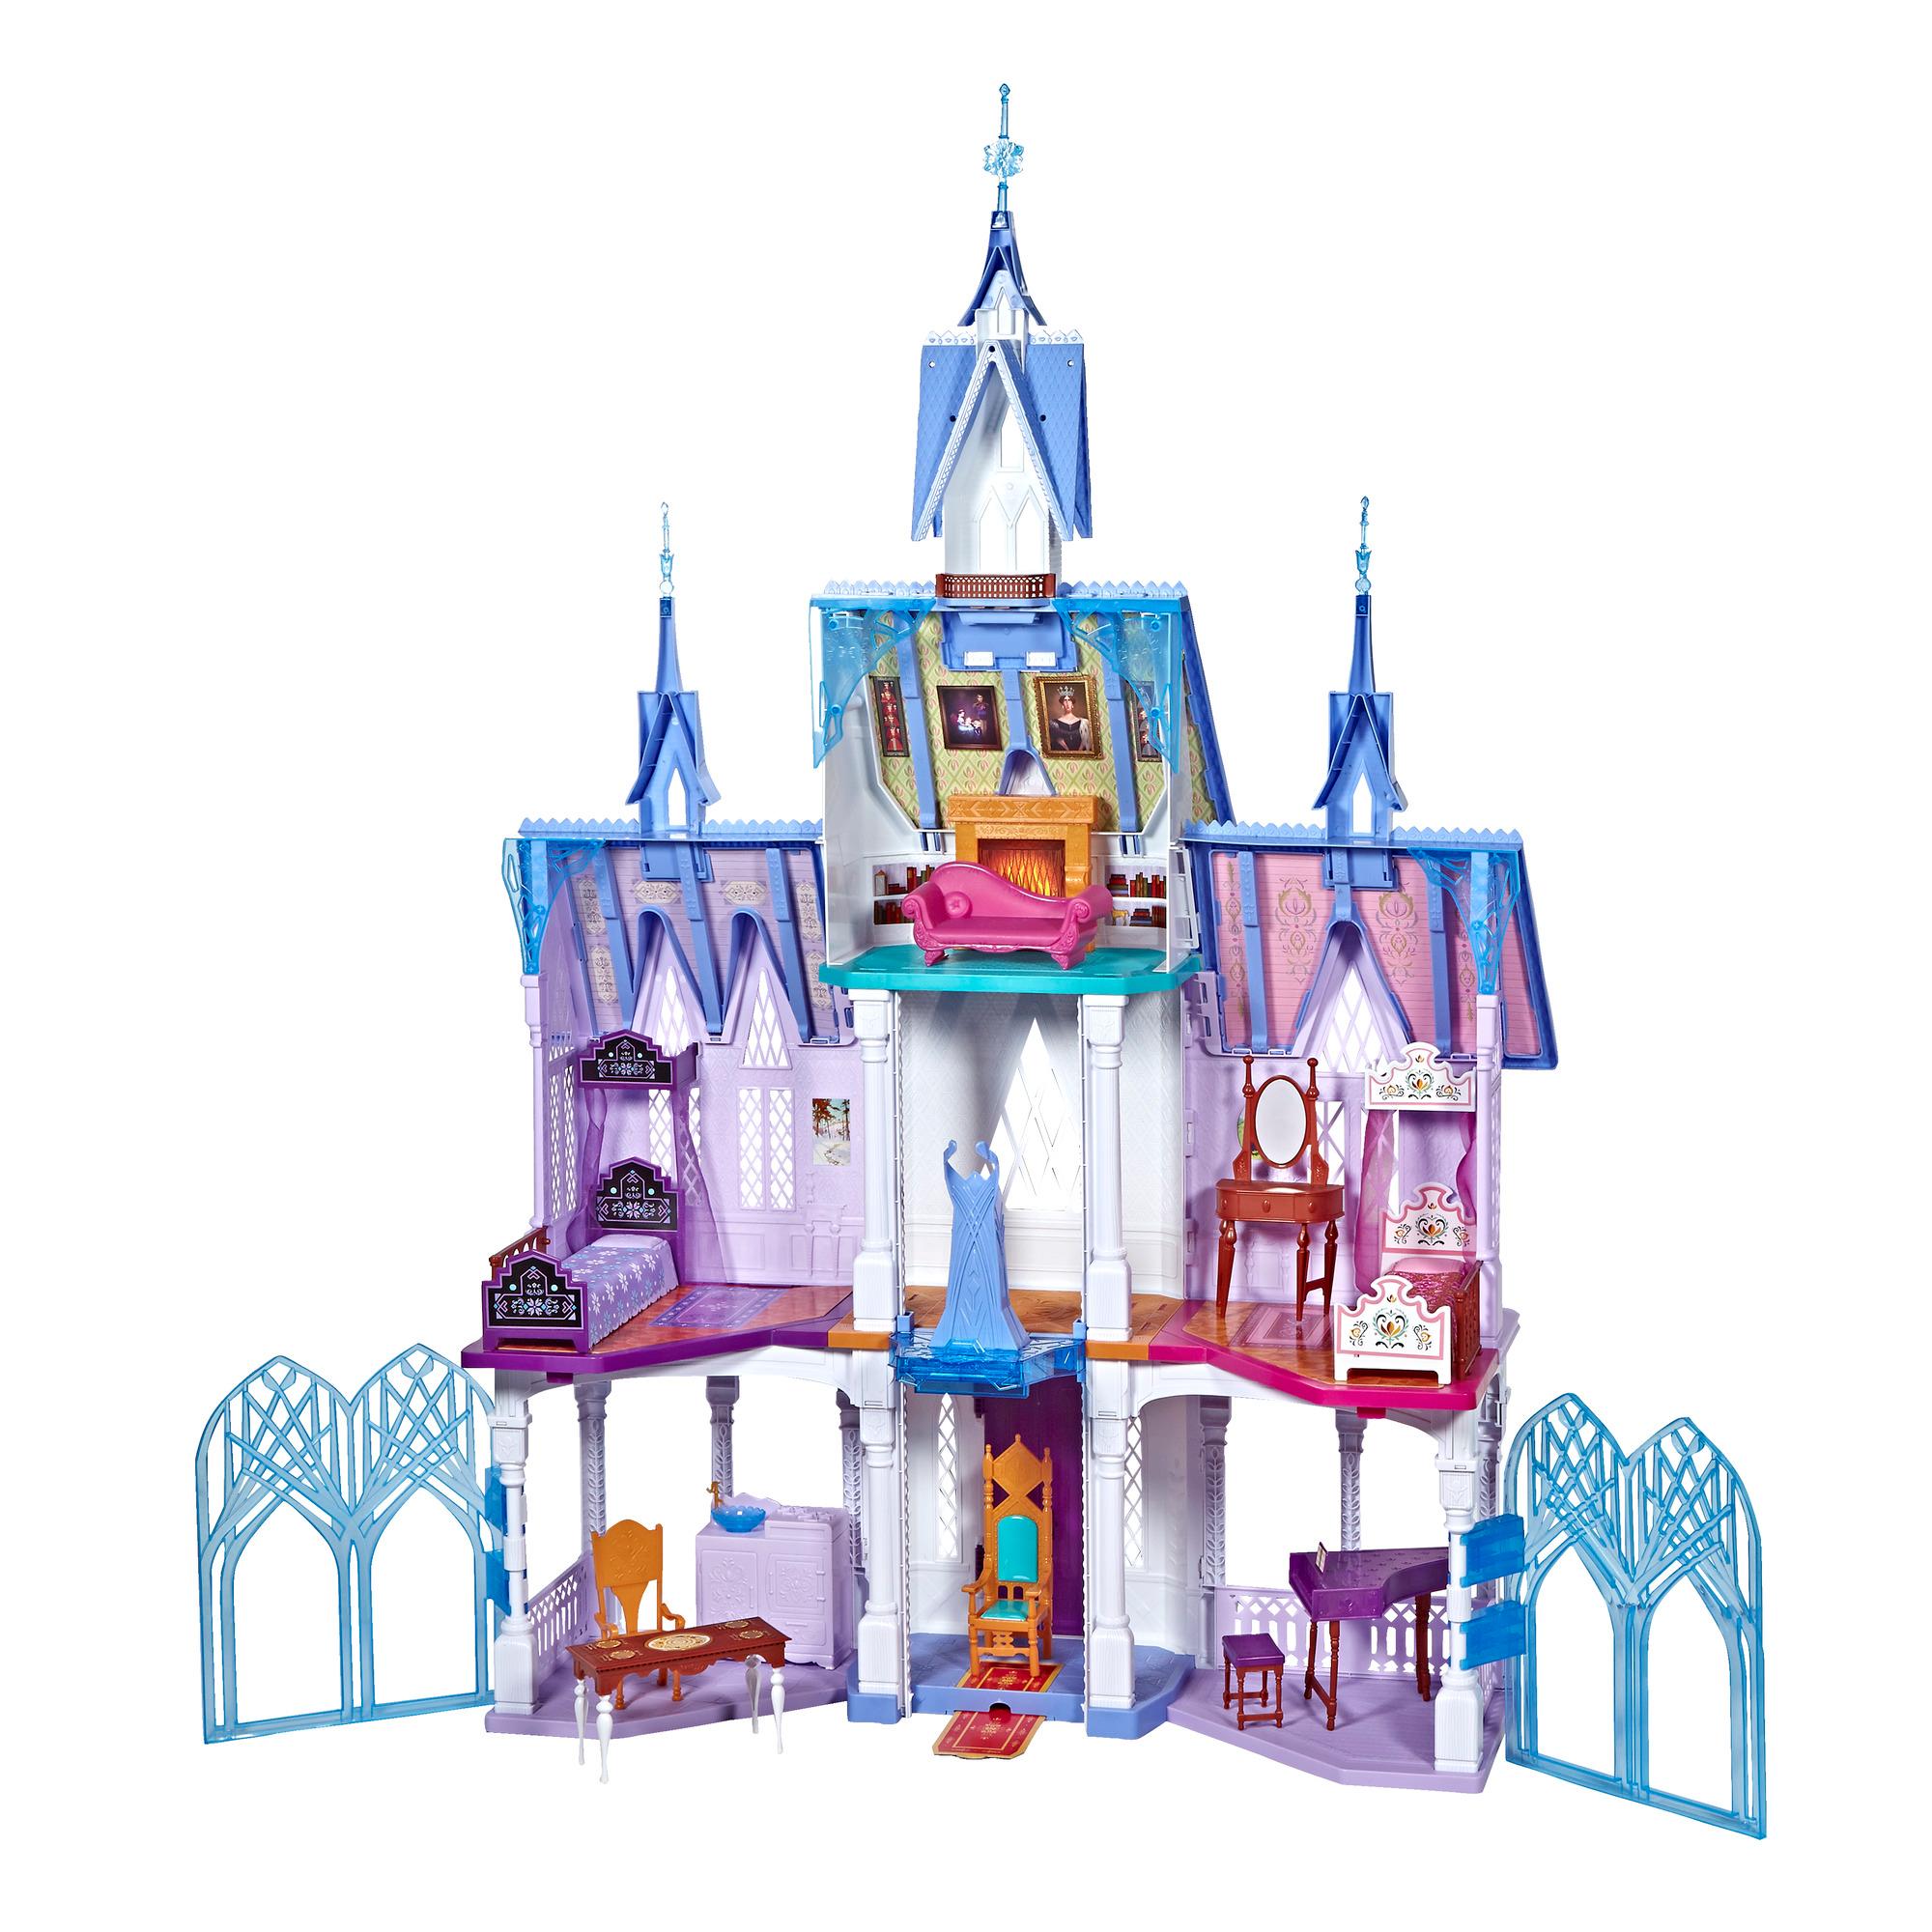 Castello di Arendelle Pieghevole Disney Frozen 2 Magical Discovery Elsa Casa Delle Bambole Ispirata al Film Disney Frozen 2